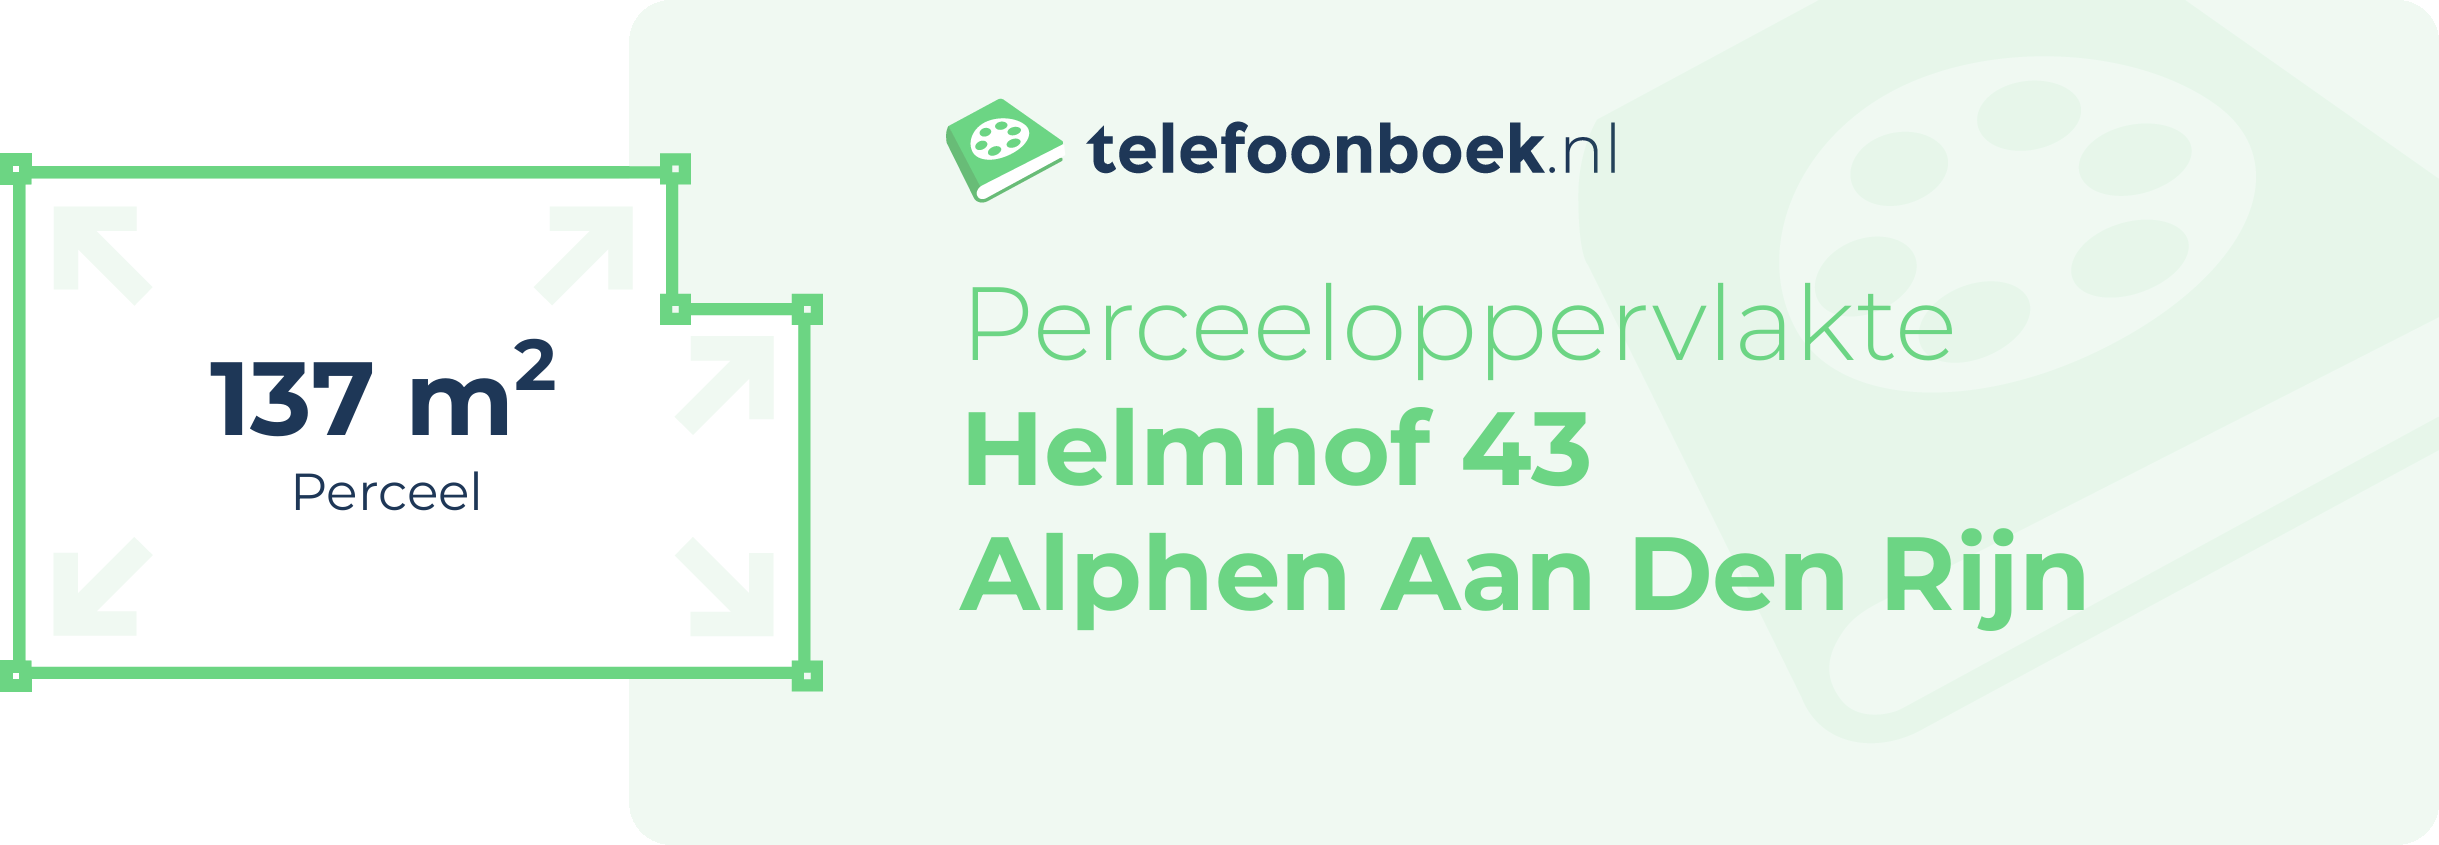 Perceeloppervlakte Helmhof 43 Alphen Aan Den Rijn